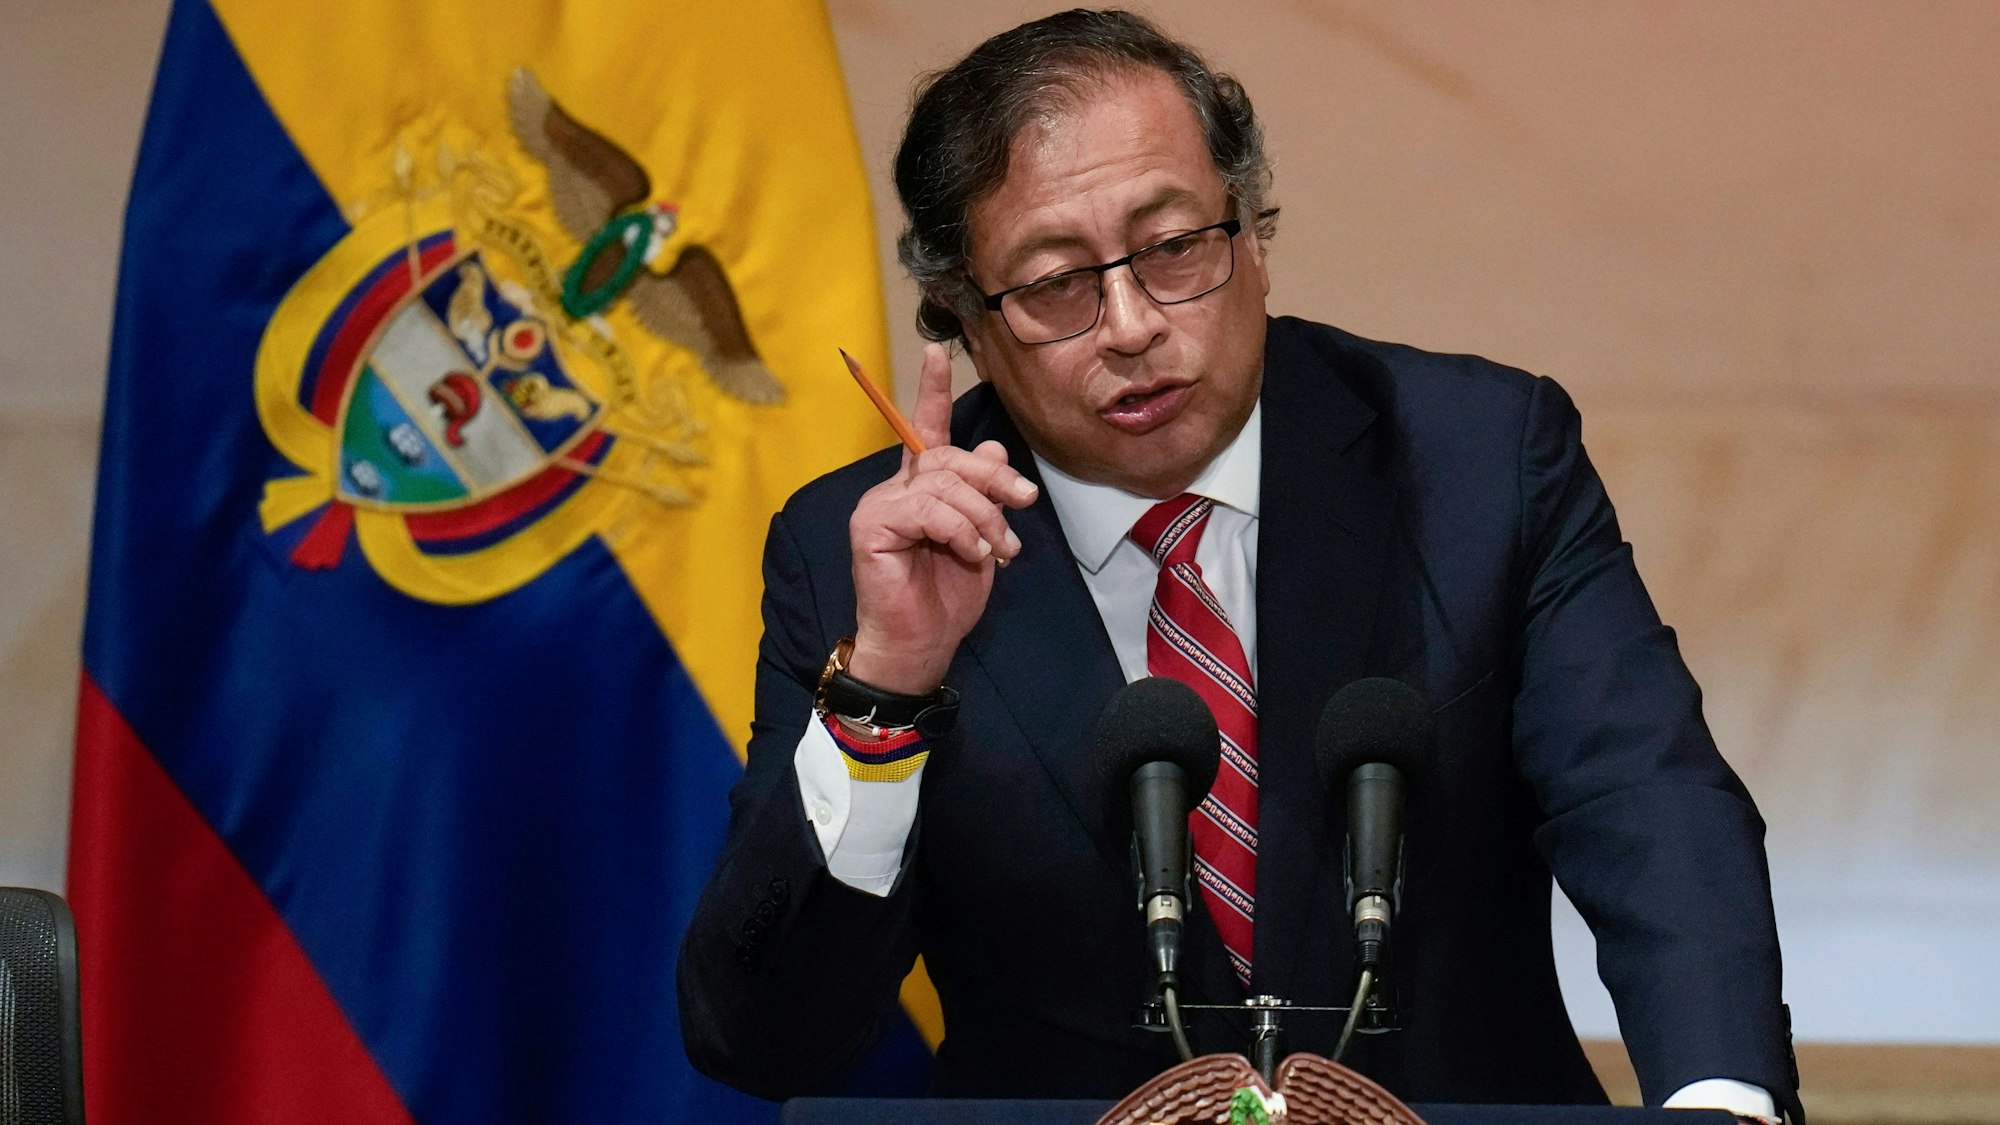 Das Bild zeigt Gustavo Petro, Präsident von Kolumbien, während seiner Rede bei der Eröffnung einer Kongresssitzung.